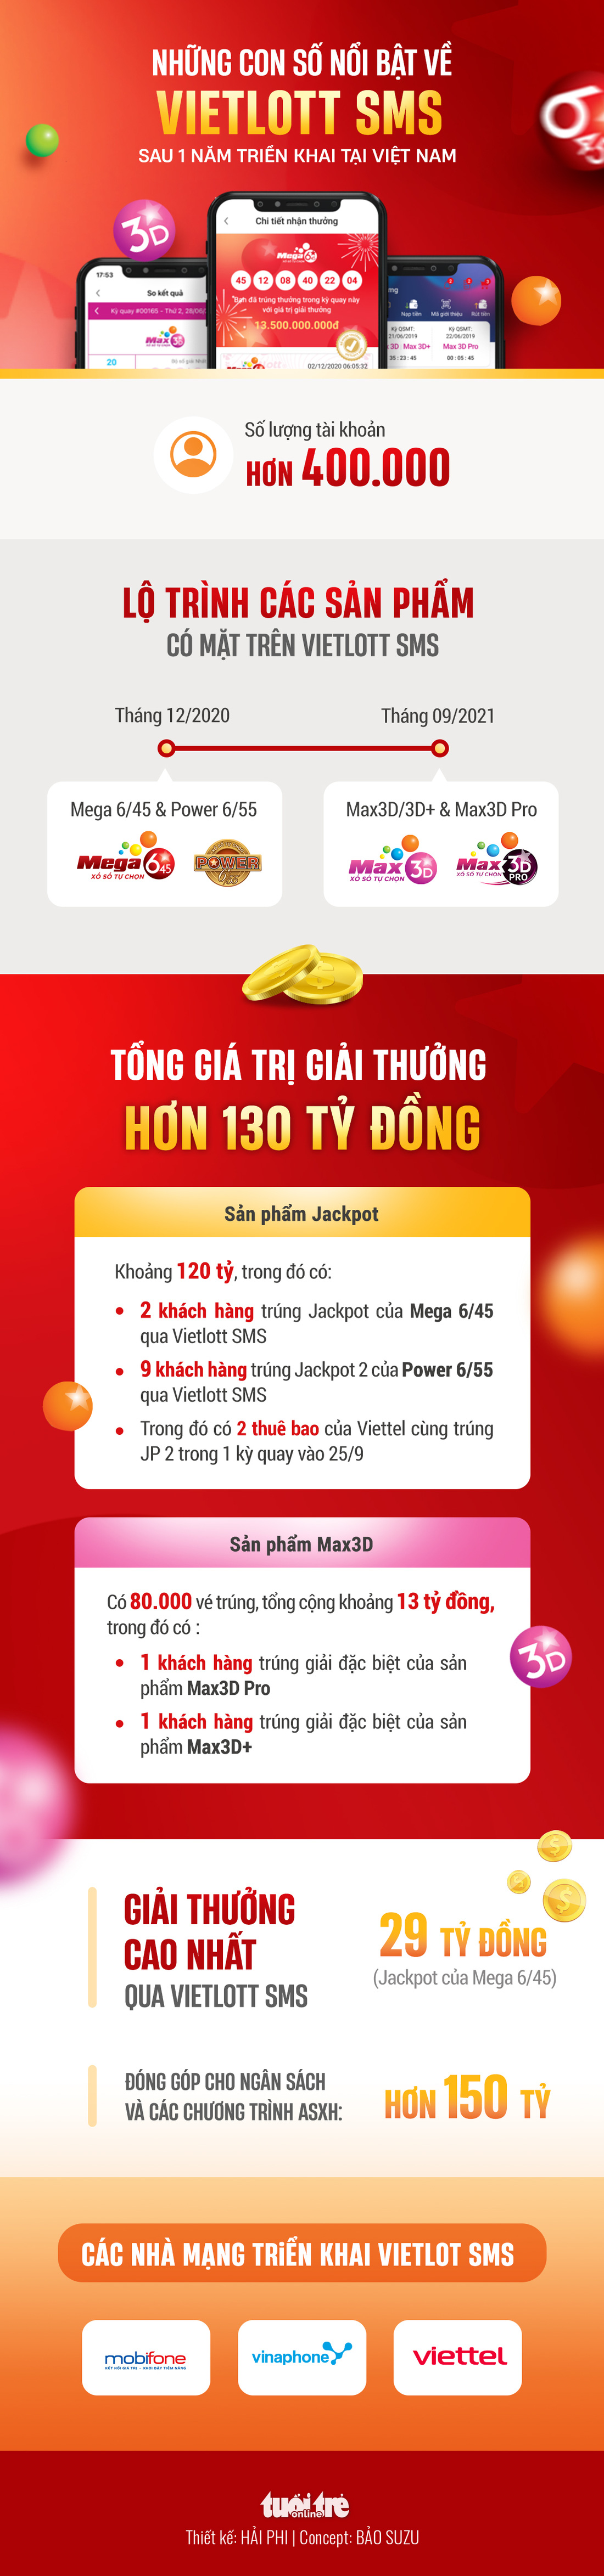 Những con số nổi bật về Vietlott SMS sau 1 năm triển khai tại Việt Nam - Ảnh 1.